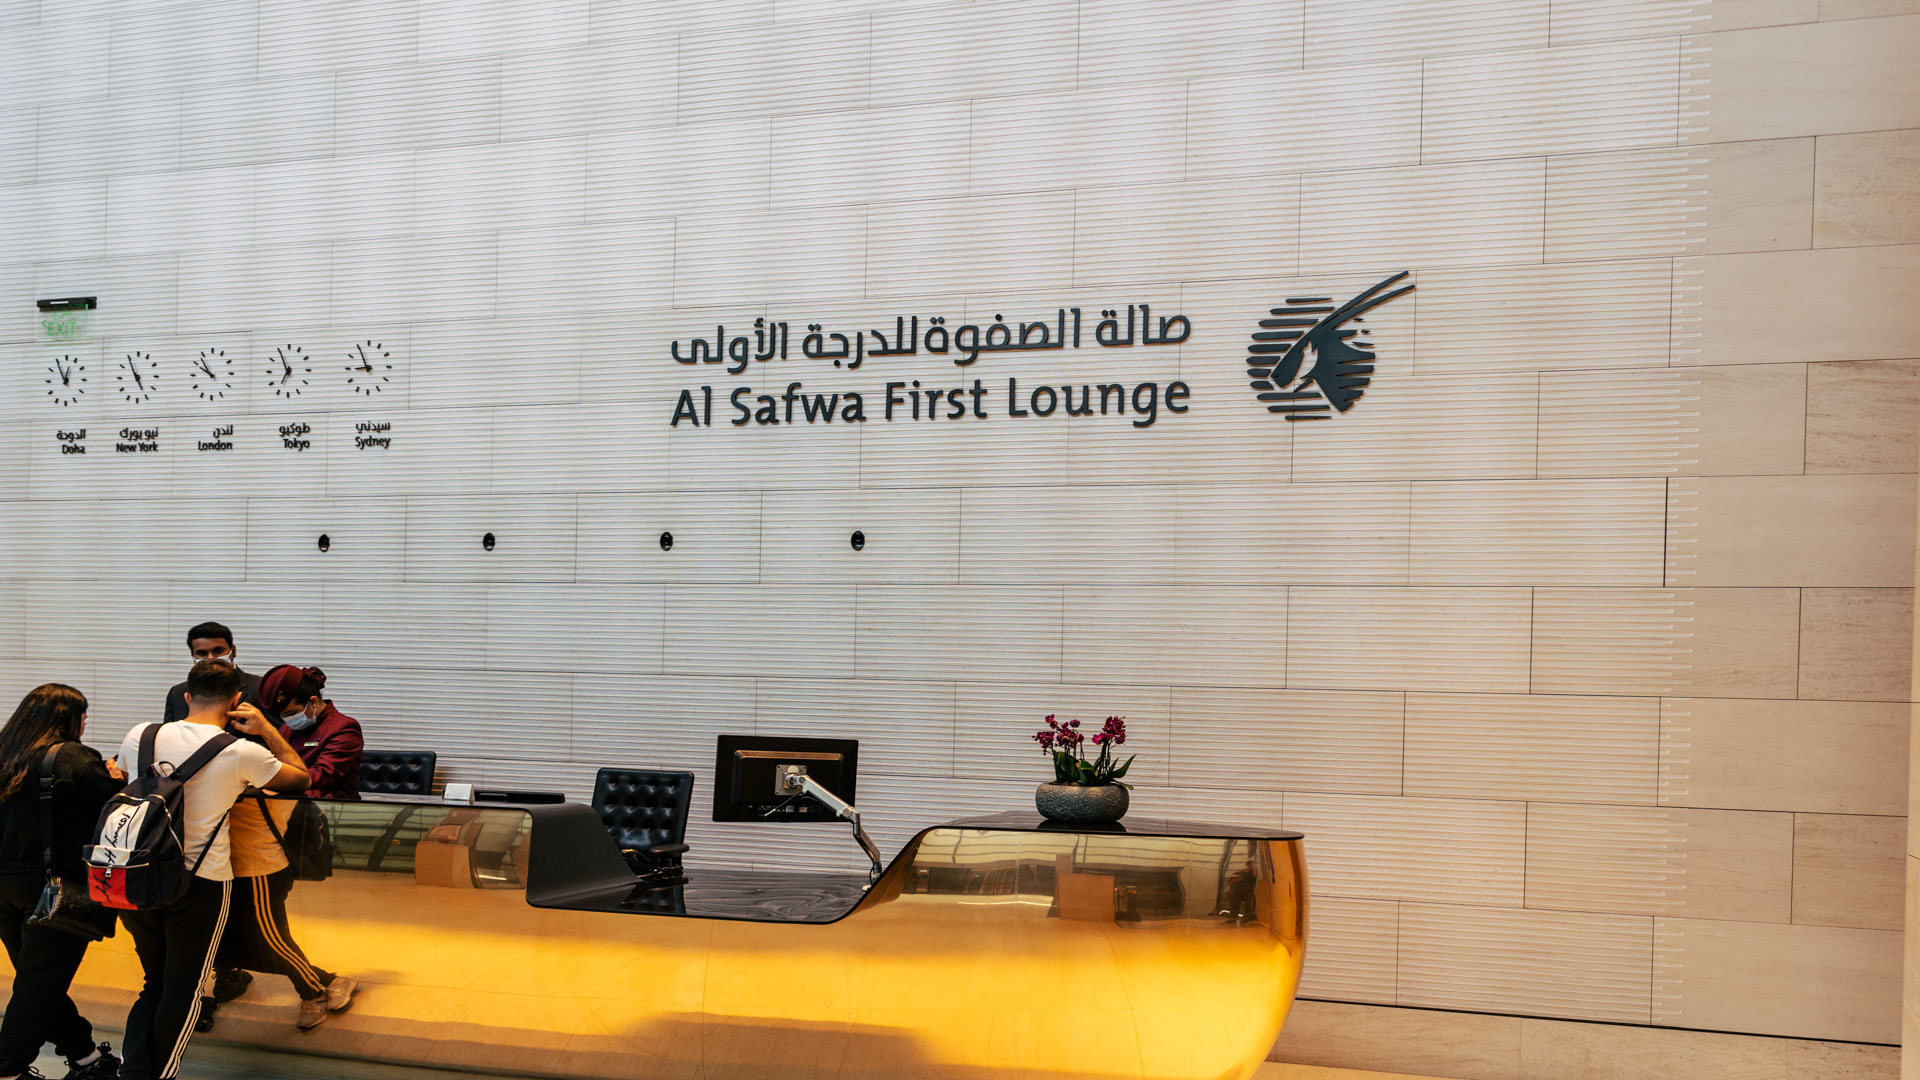 Qatar Airways Al Safwa Lounge side entrance